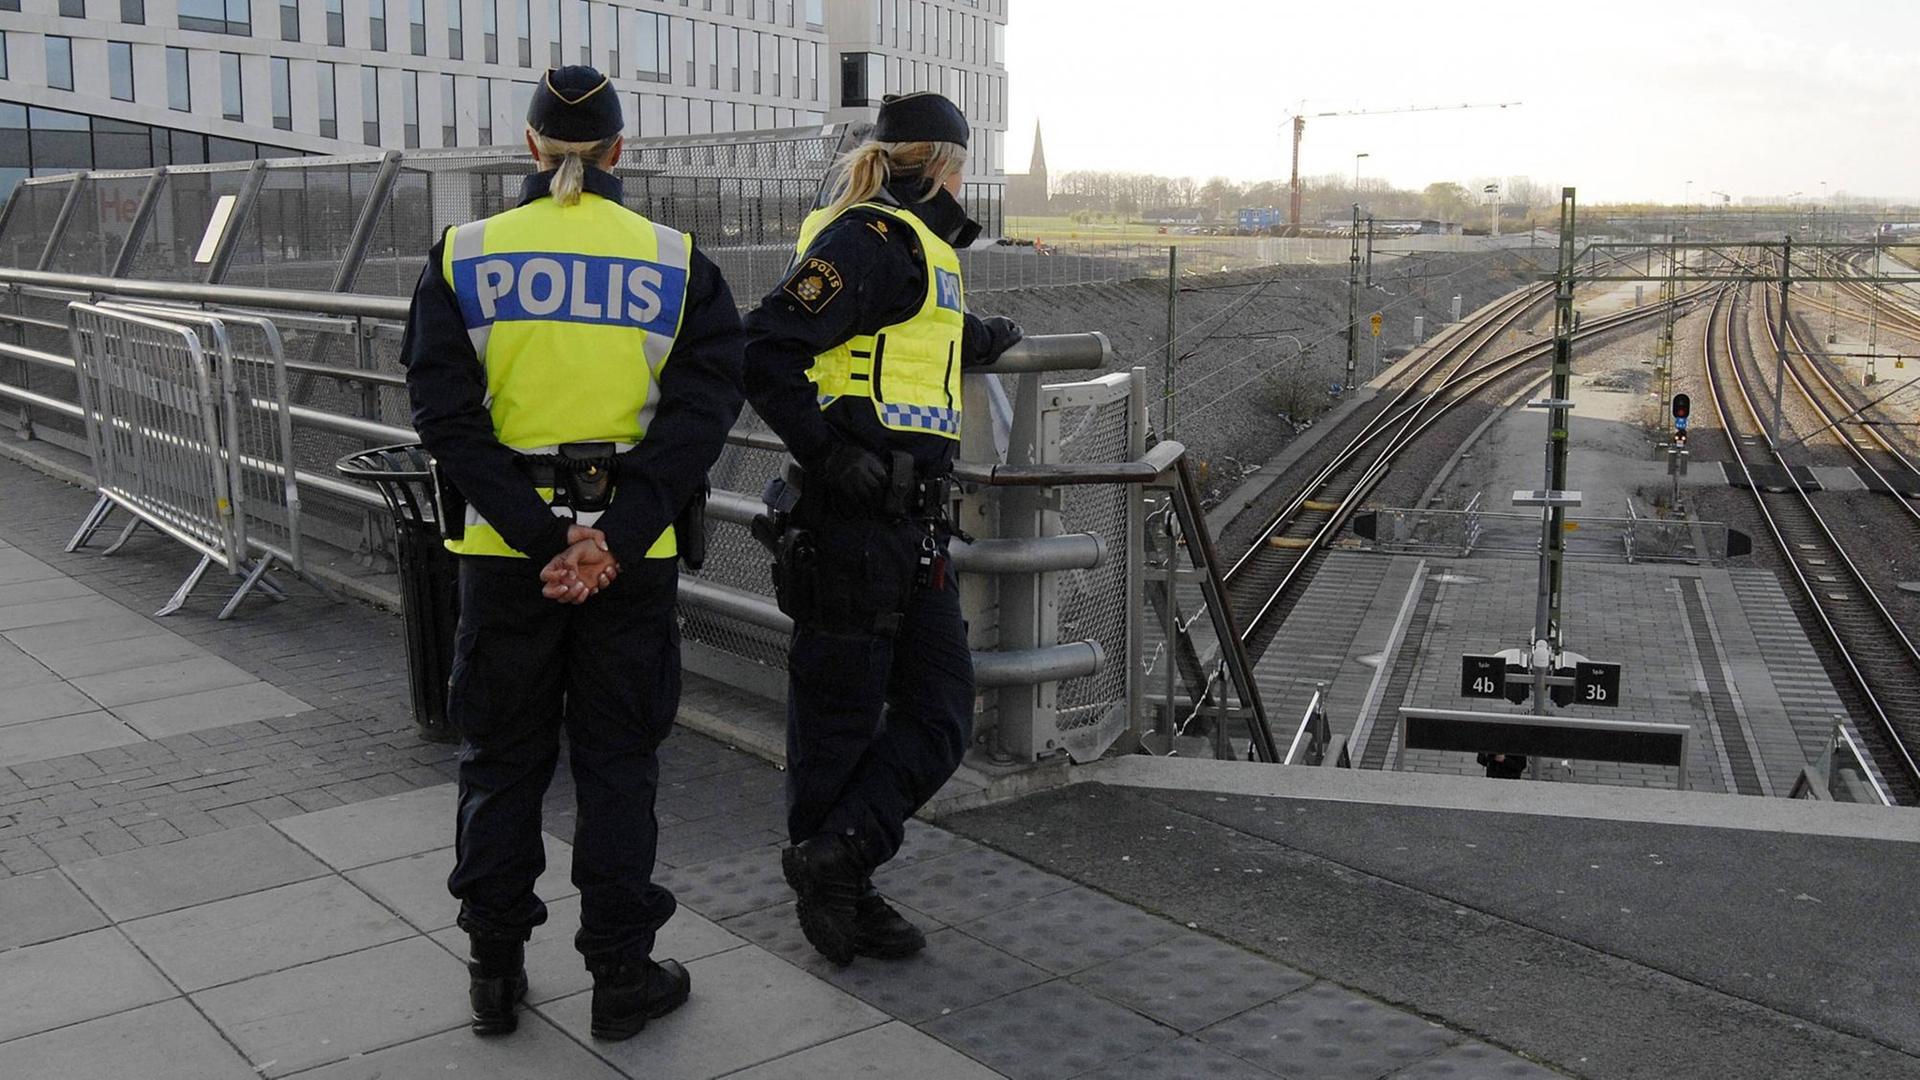 Polizistinnen bei Kontrollen an der Bahnstation Hyllie in Malmö in Schweden